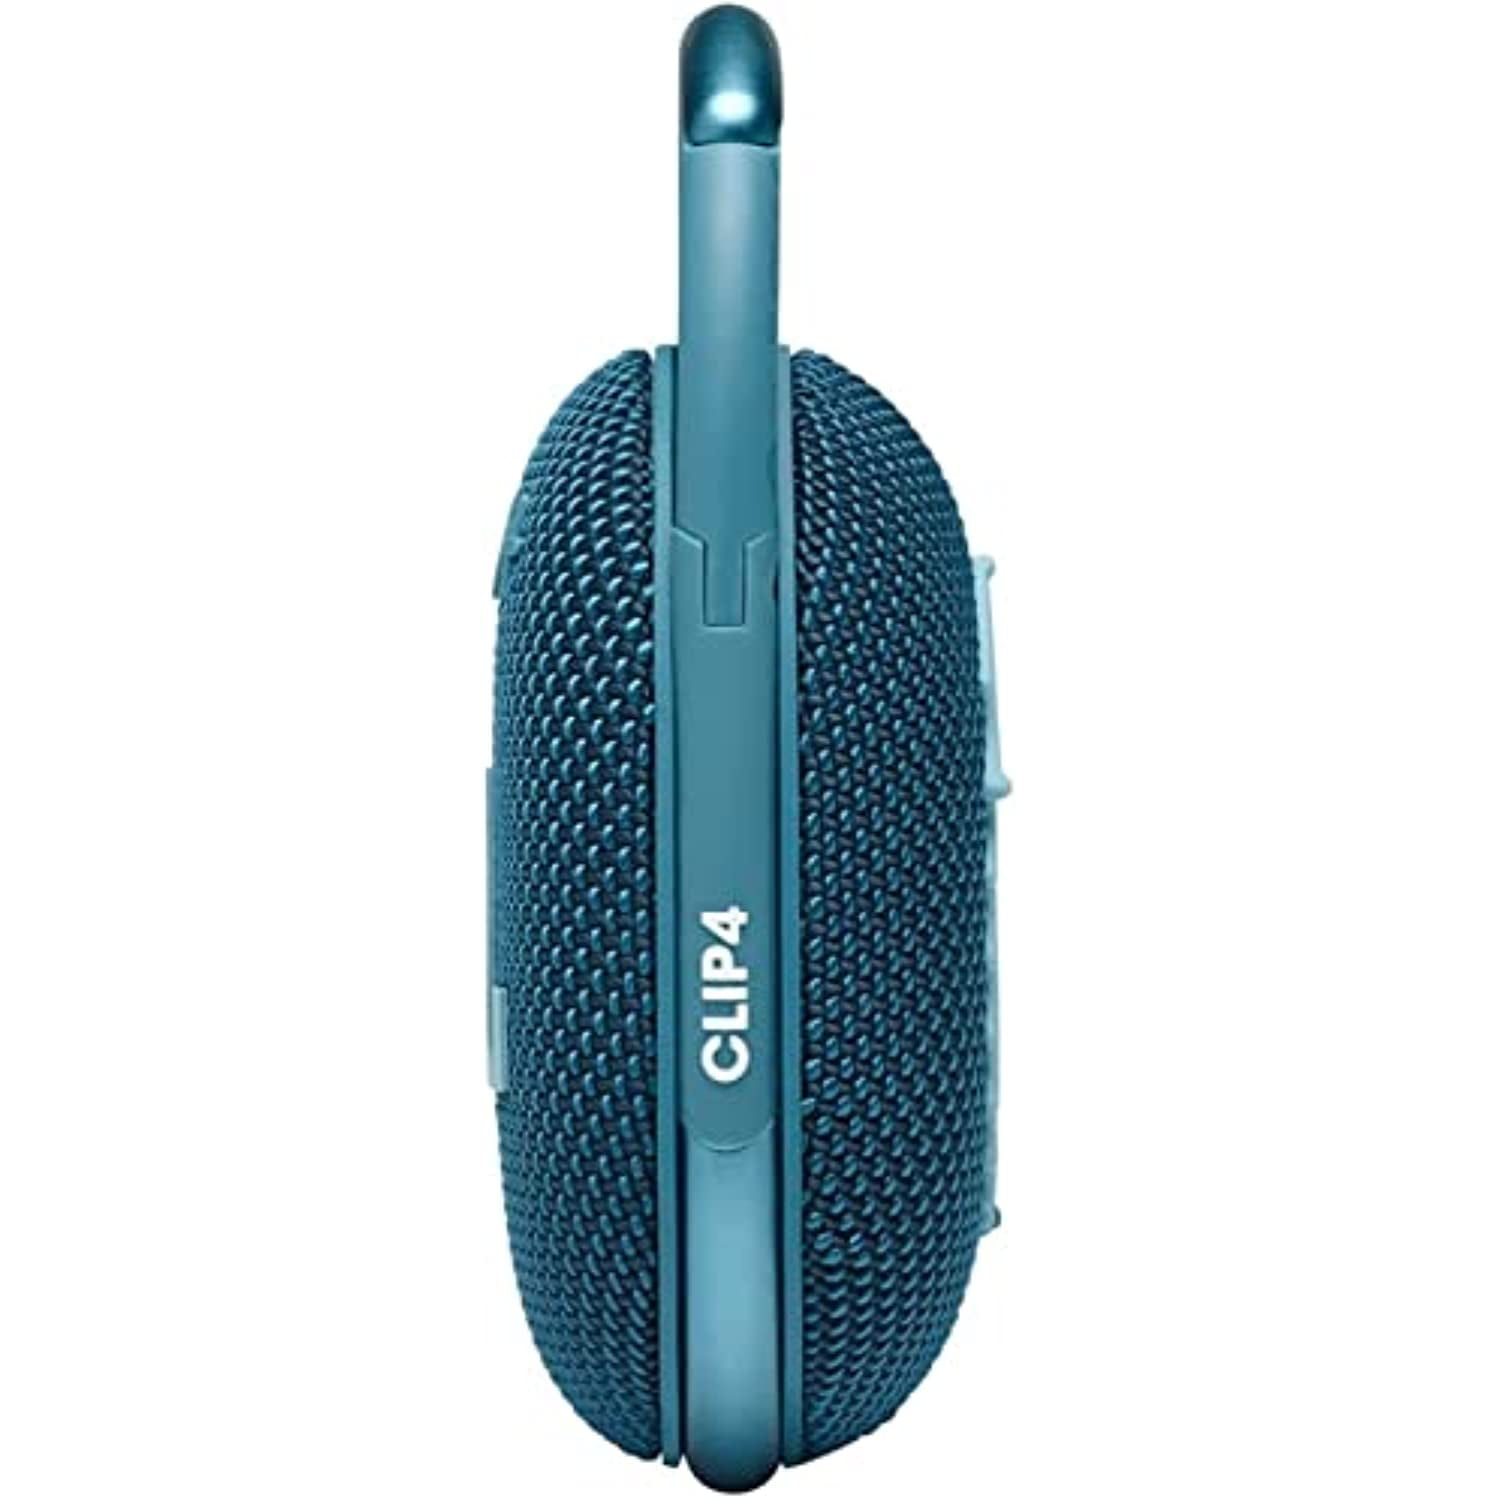 JBL Clip 4 Waterproof Portable Bluetooth Speaker Bundle with Megen